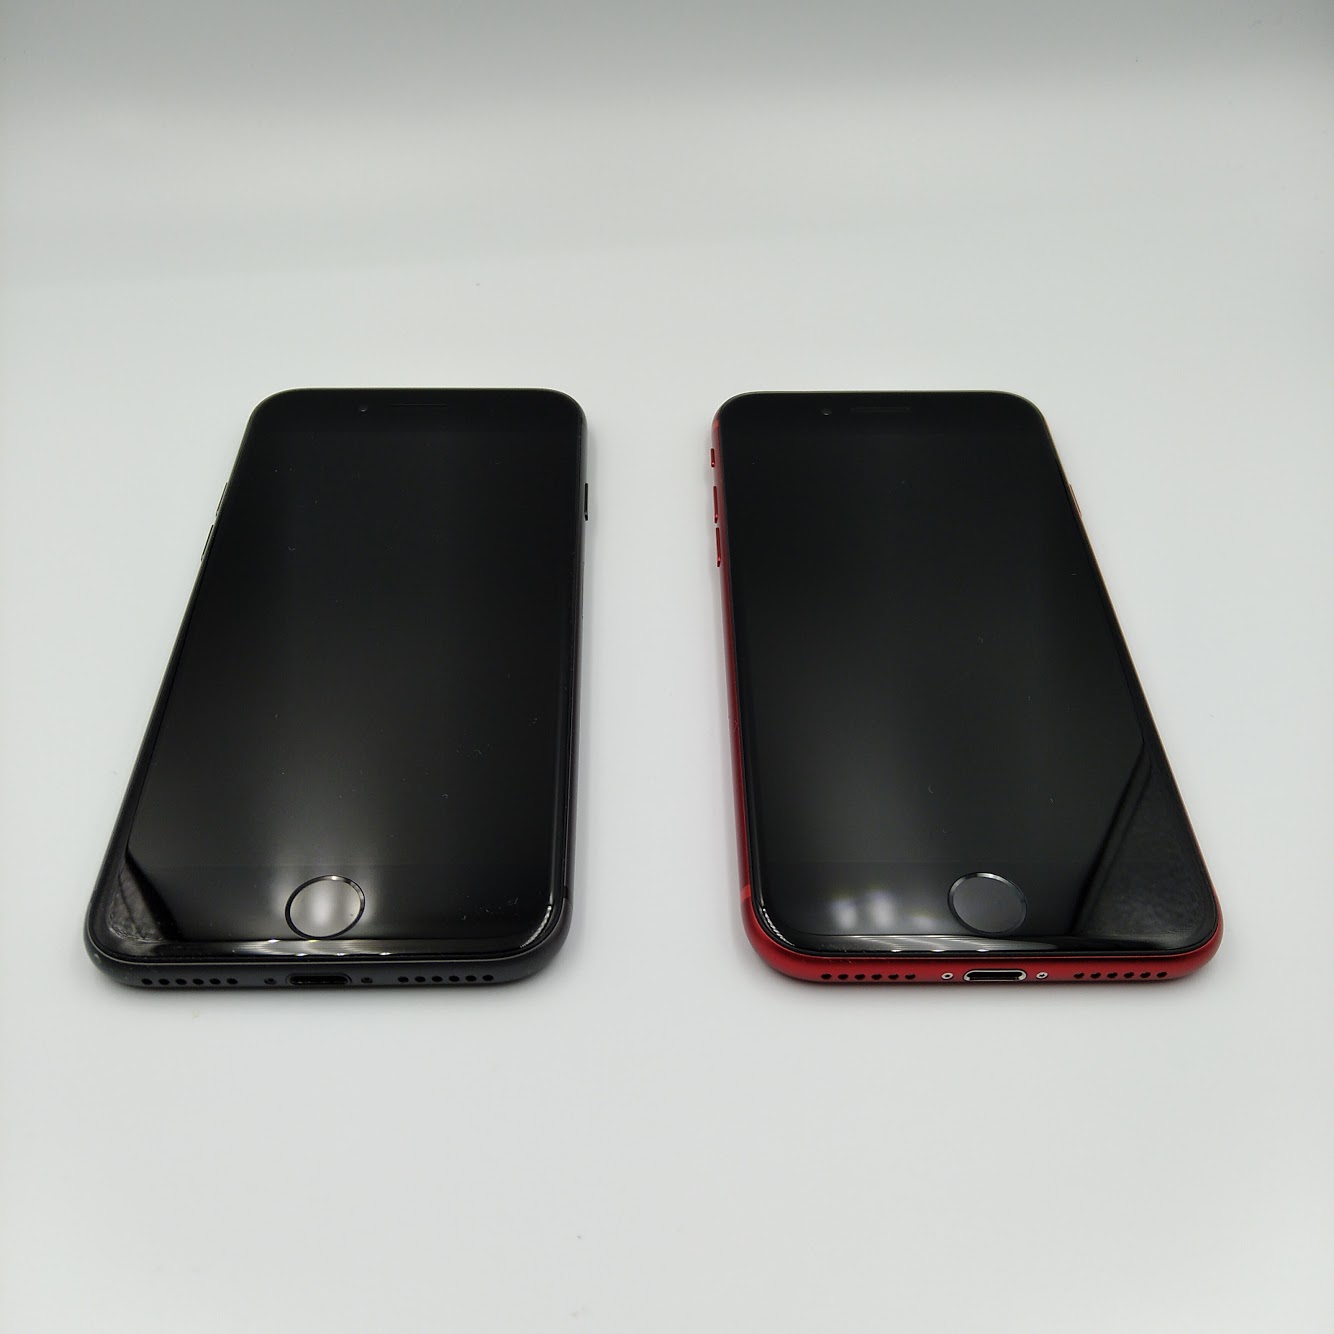 Iphone Se 第2世代 レビュー Iphone 8と実機で比較 買い替えるべき ちびめがねアンテナ